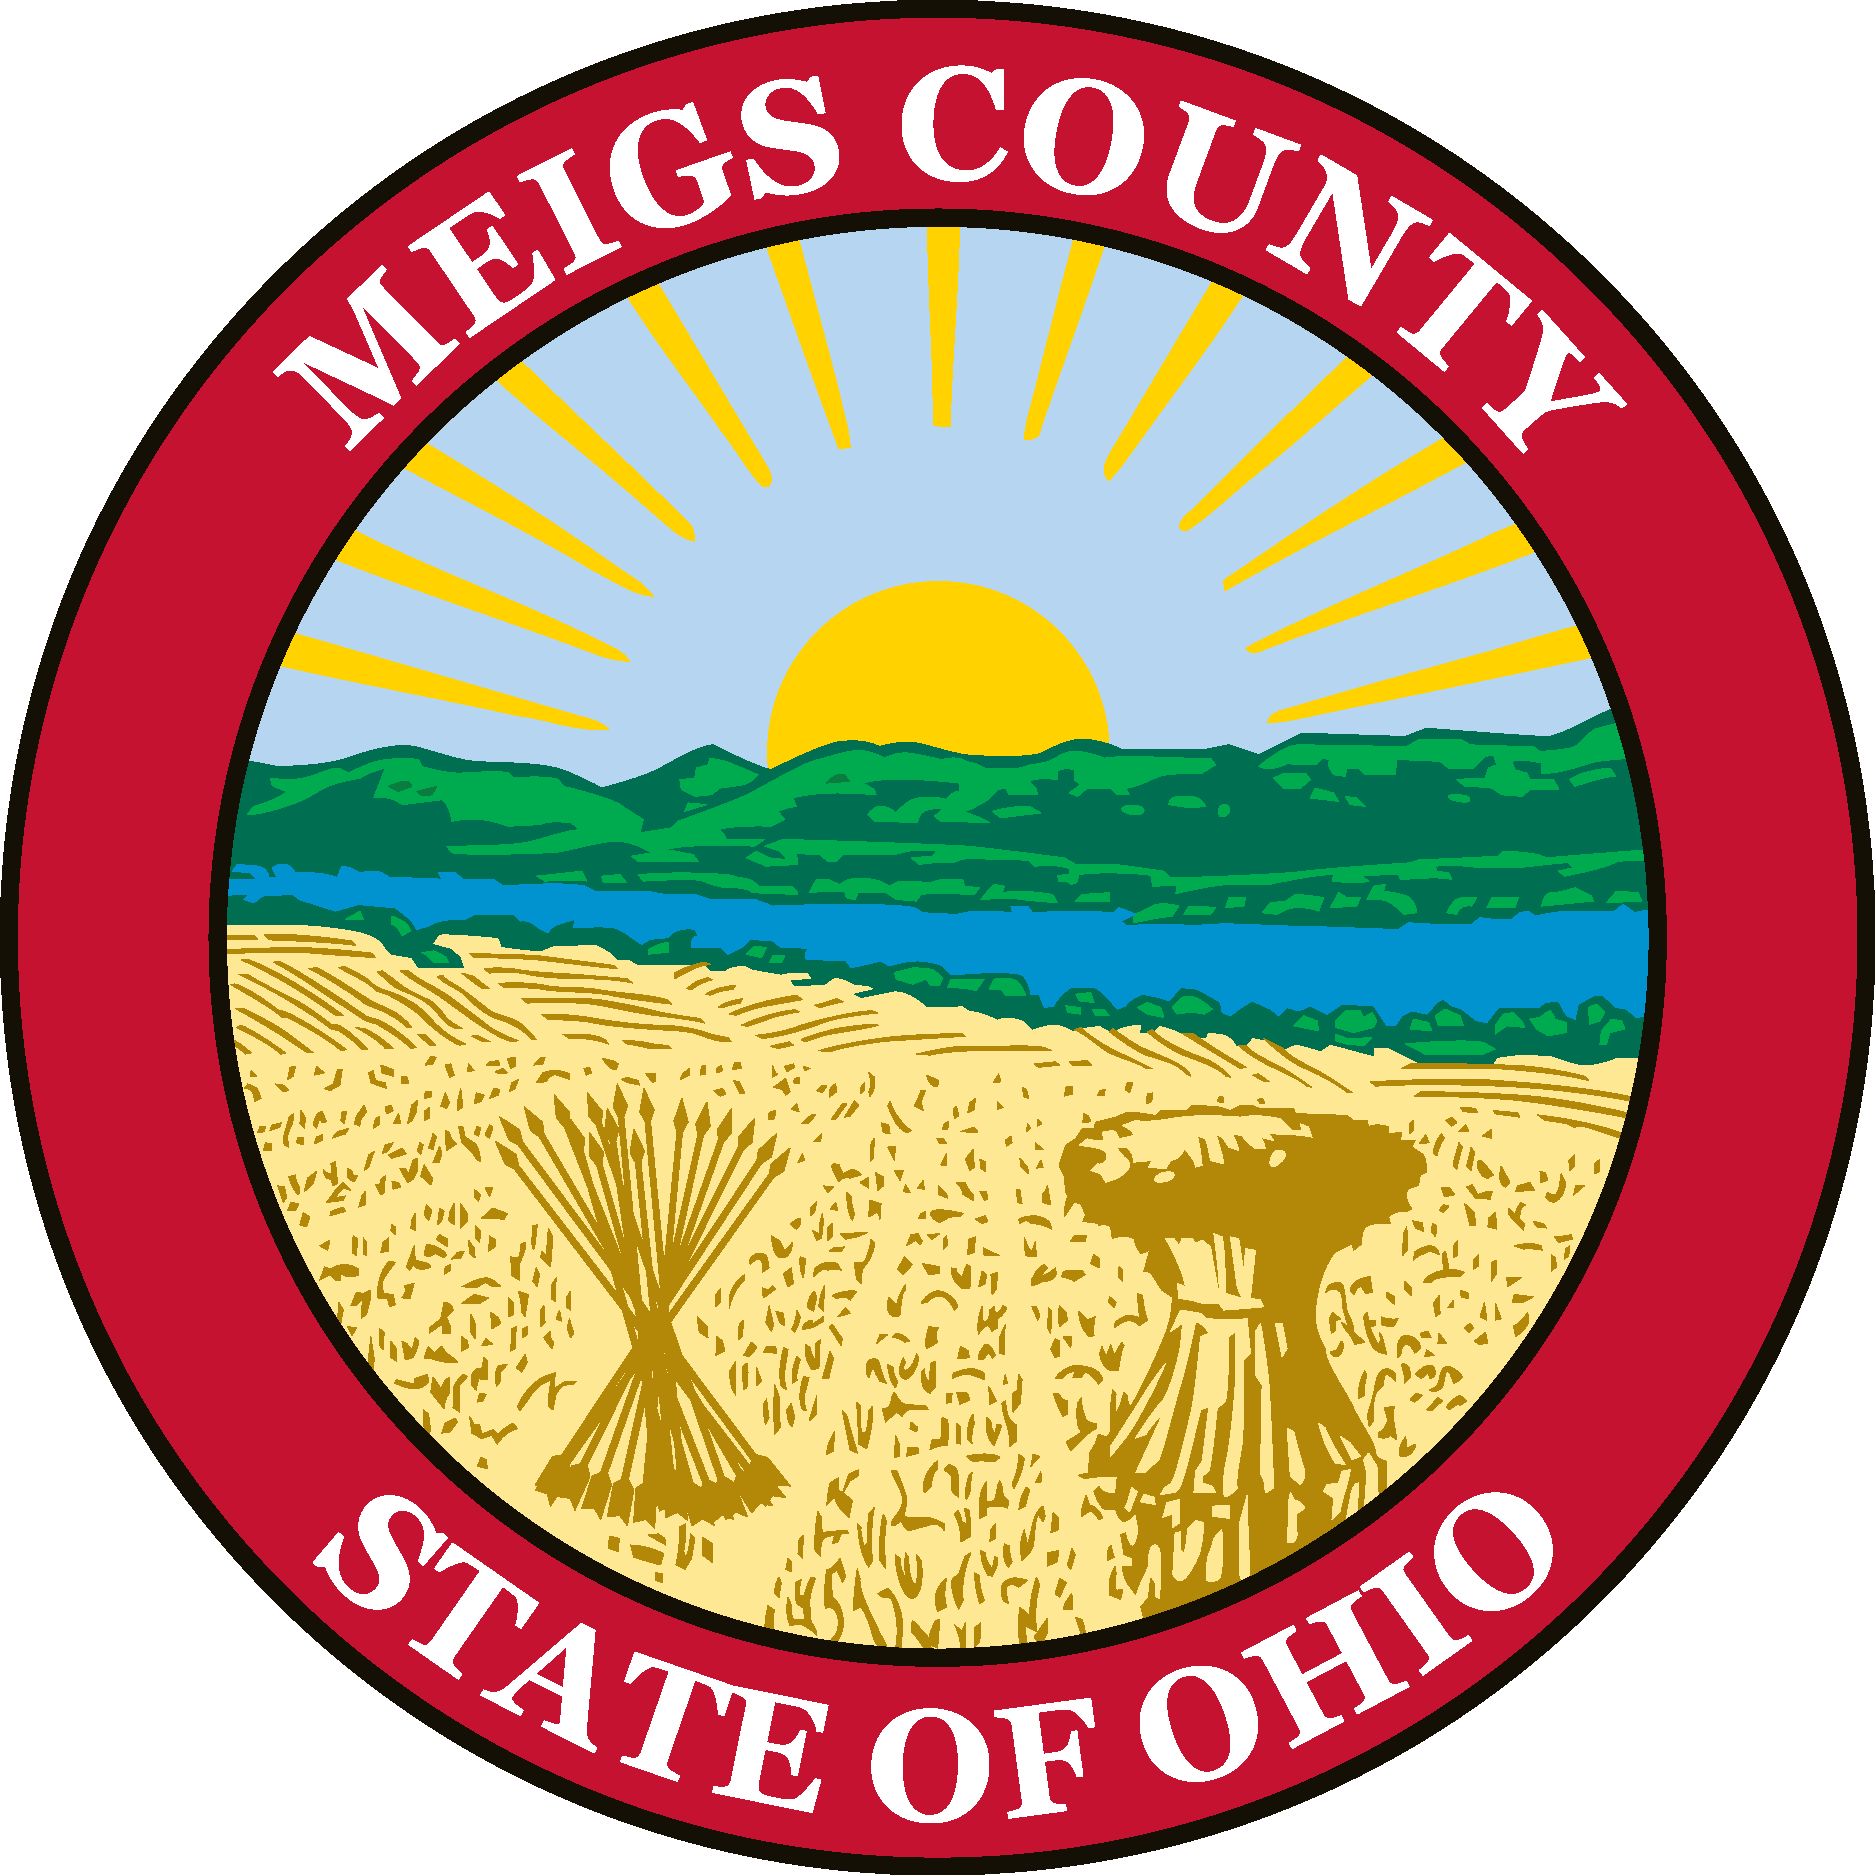 Meigs County Logo Vector